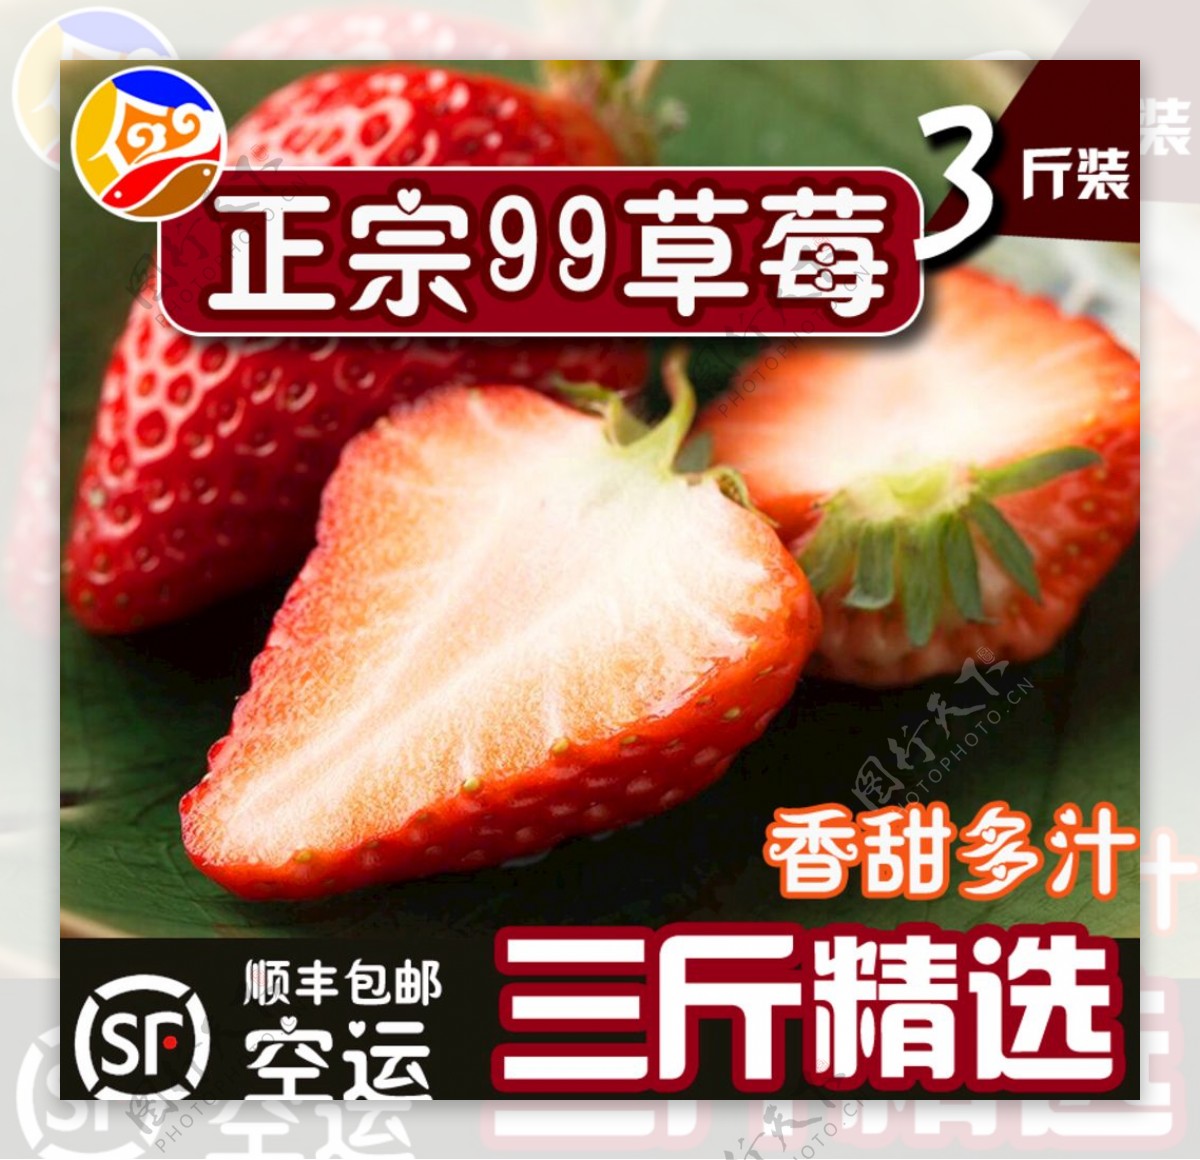 草莓宣传图